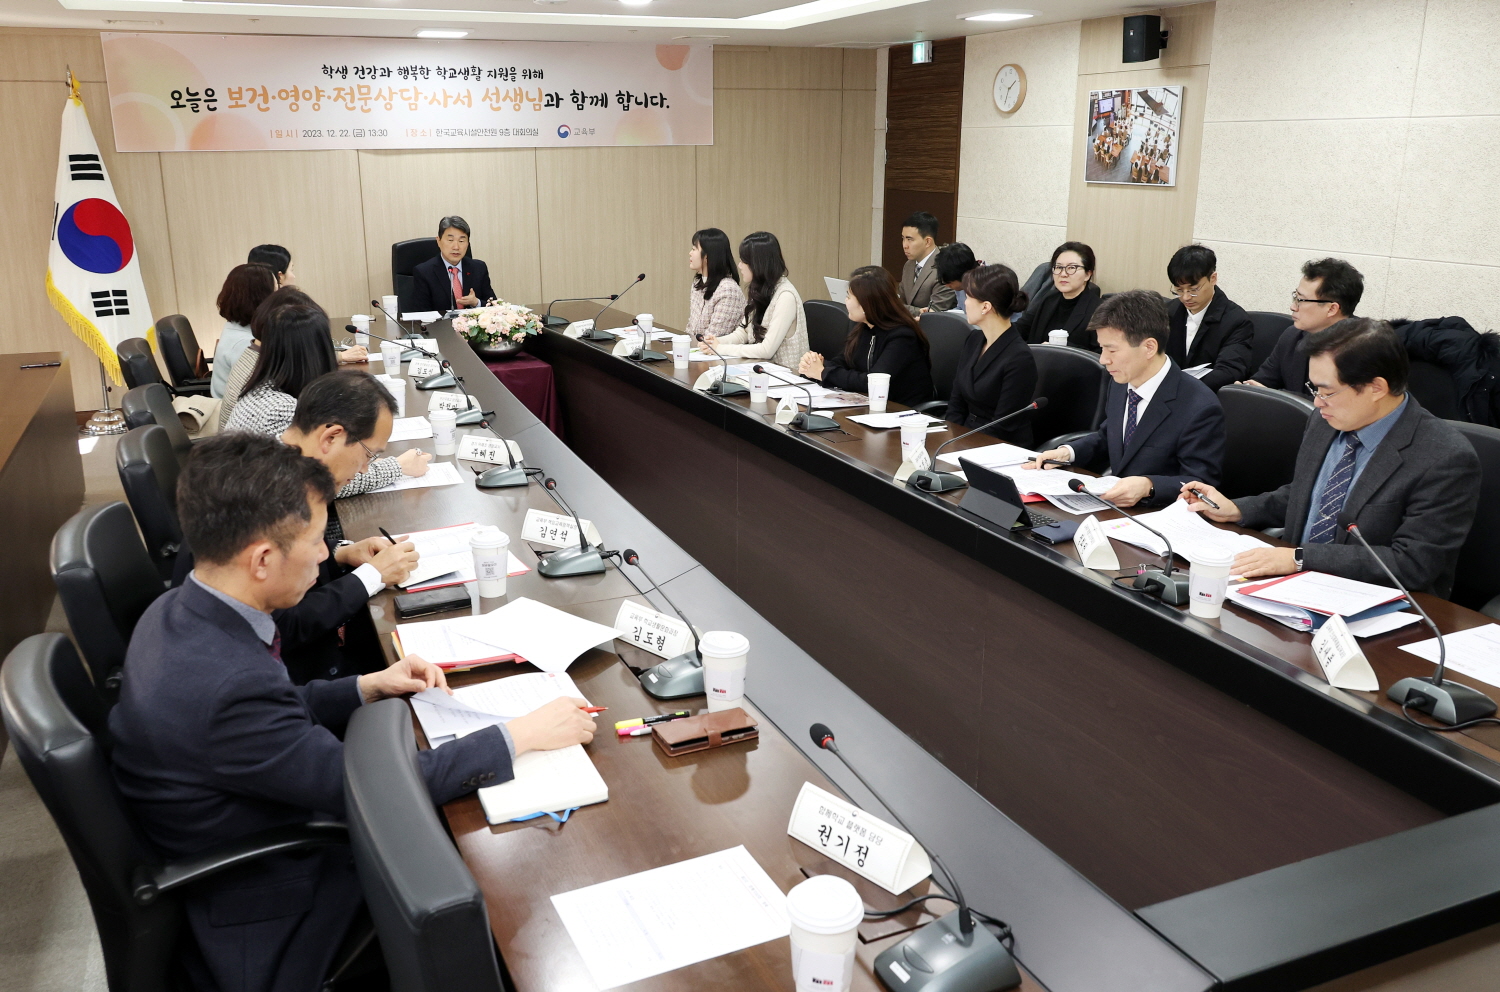 이주호 부총리 겸 교육부장관은 12월 22일(금), 한국교육시설안전원에서 함께학교 플랫폼과 연계한 제3차 「함께차담회」를 개최했다.